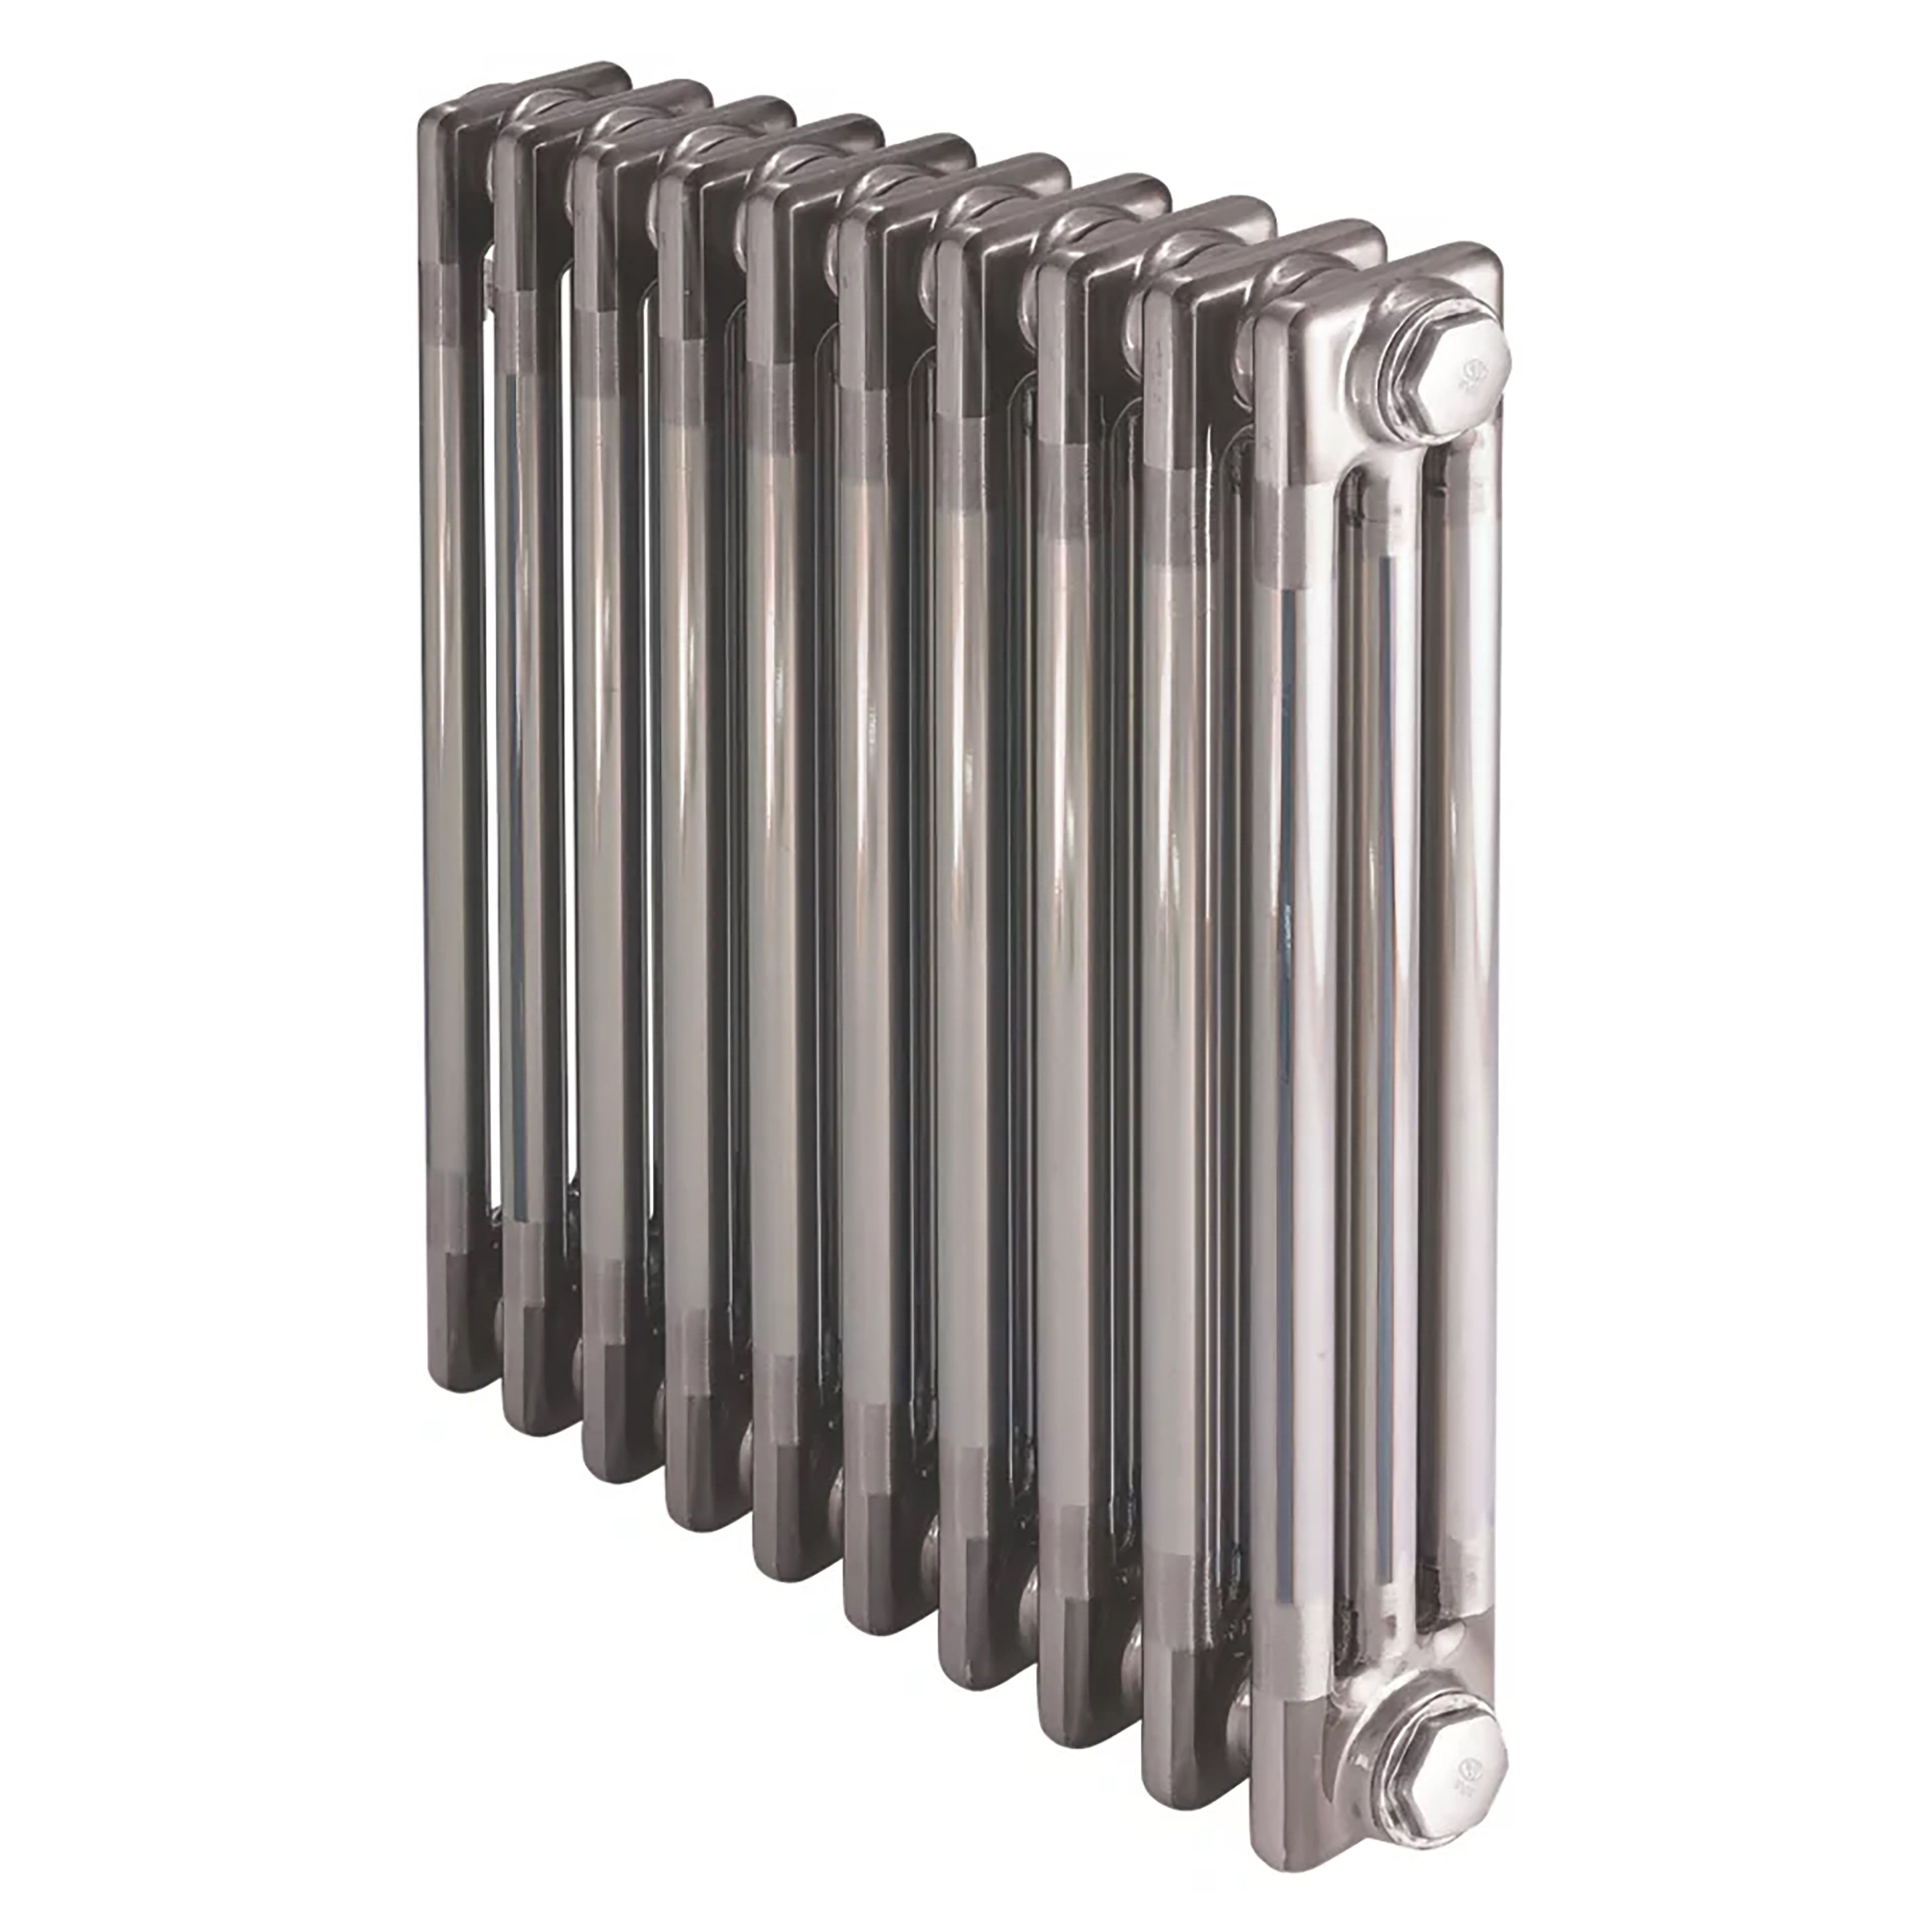 Acova Raw metal 3 Column Radiator, (W)628mm x (H)600mm